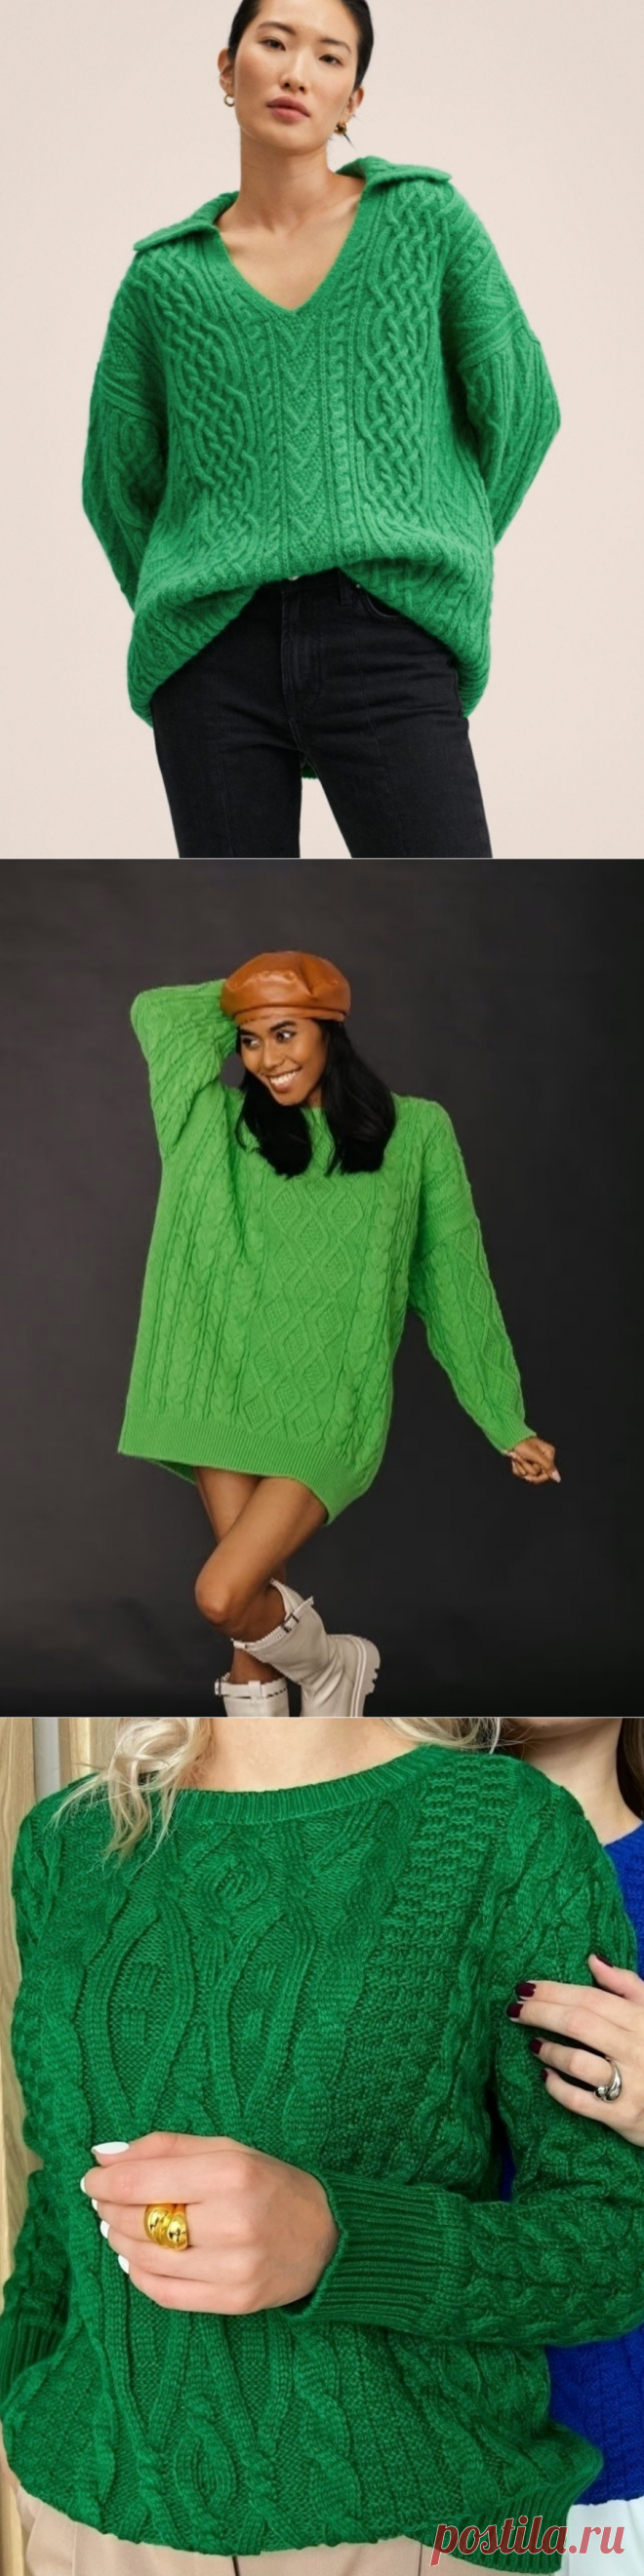 Подборка арановых зеленых свитеров со схемами и описаниями